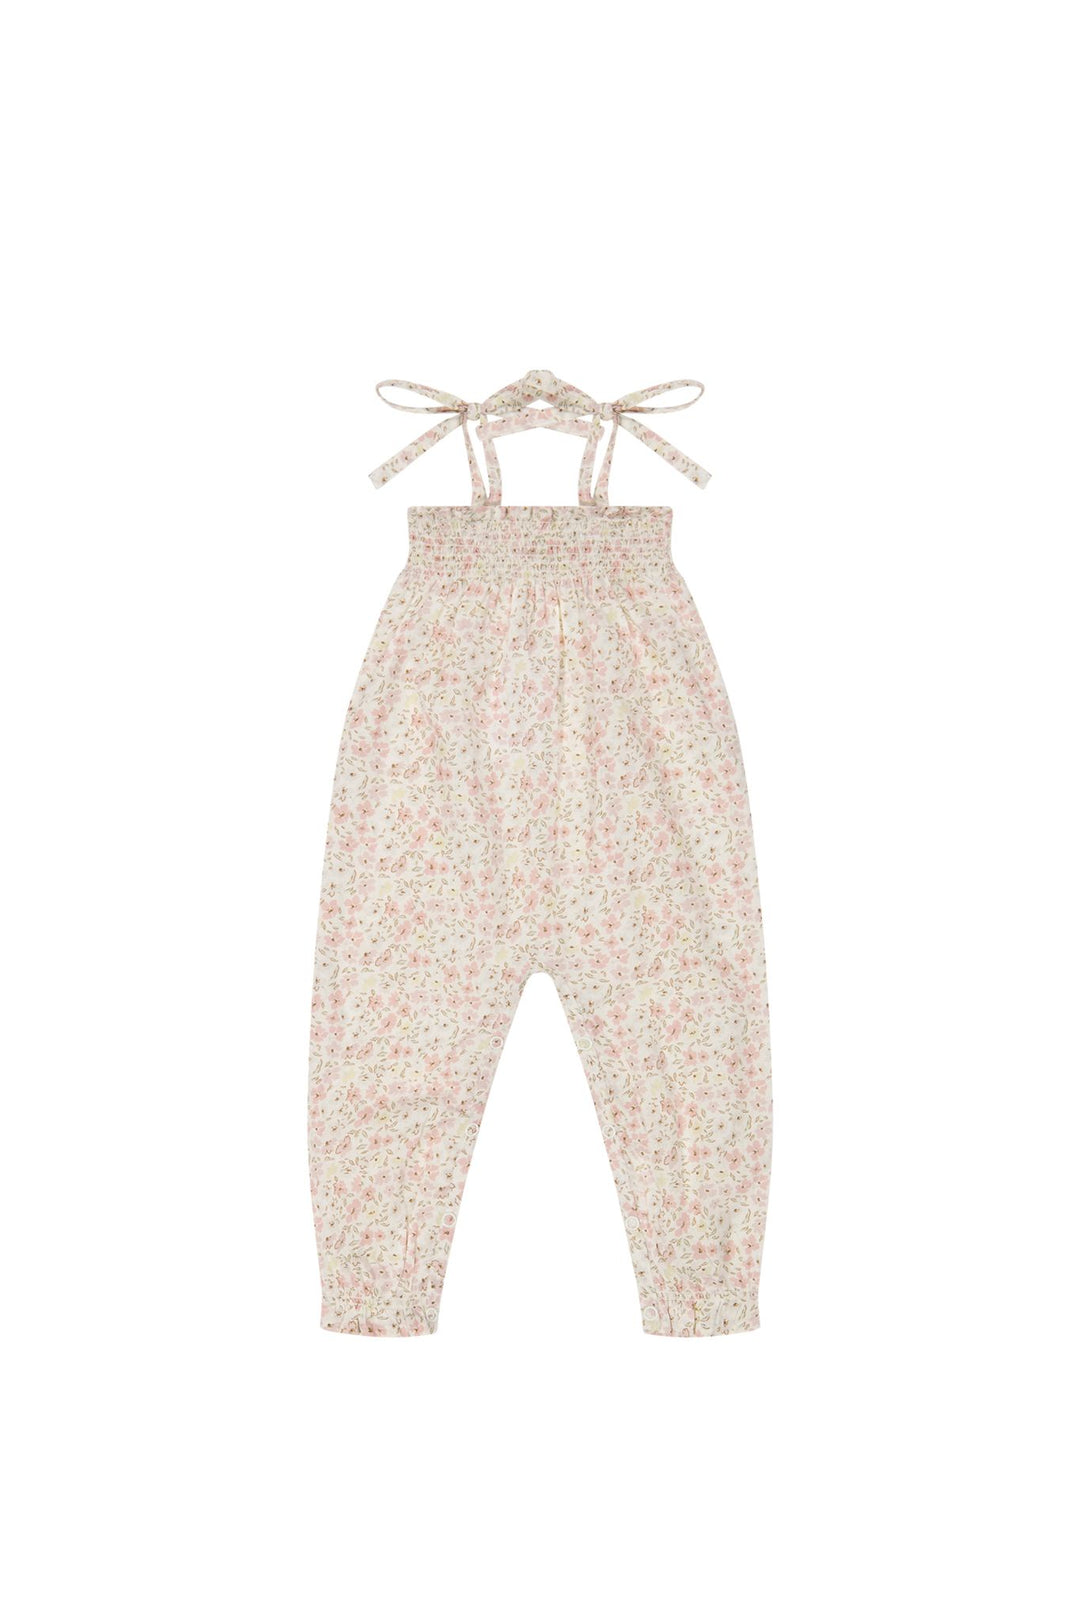 Organic Cotton Summer Playsuit - Fifi Floral - JL & CO. boutique 